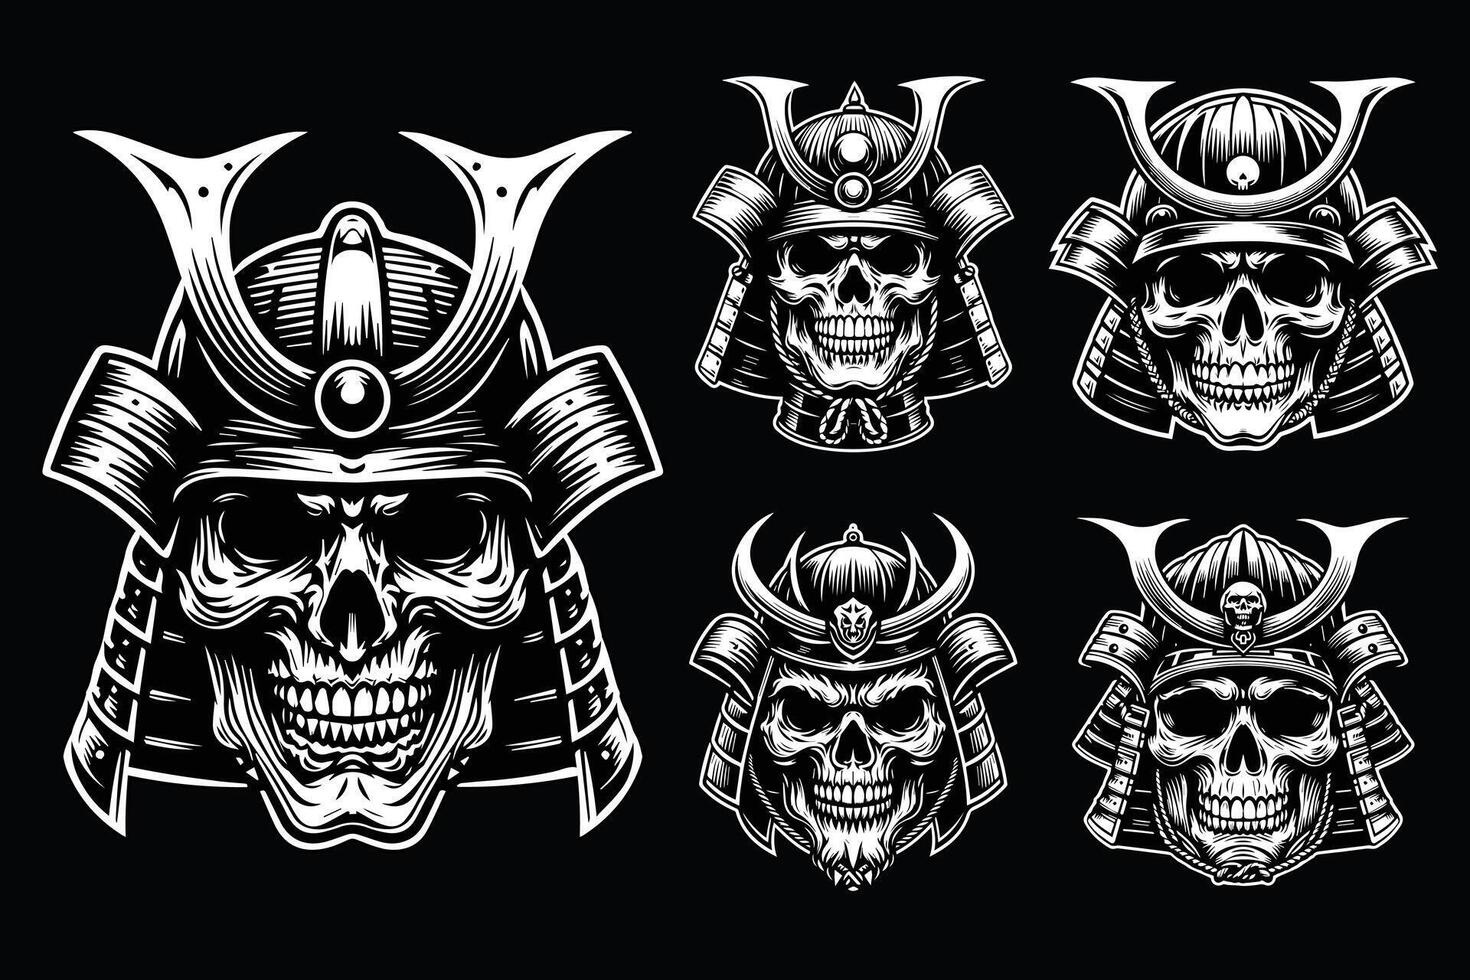 Dark Art Skull Samurai Japanese Head Black and White Illustration vector